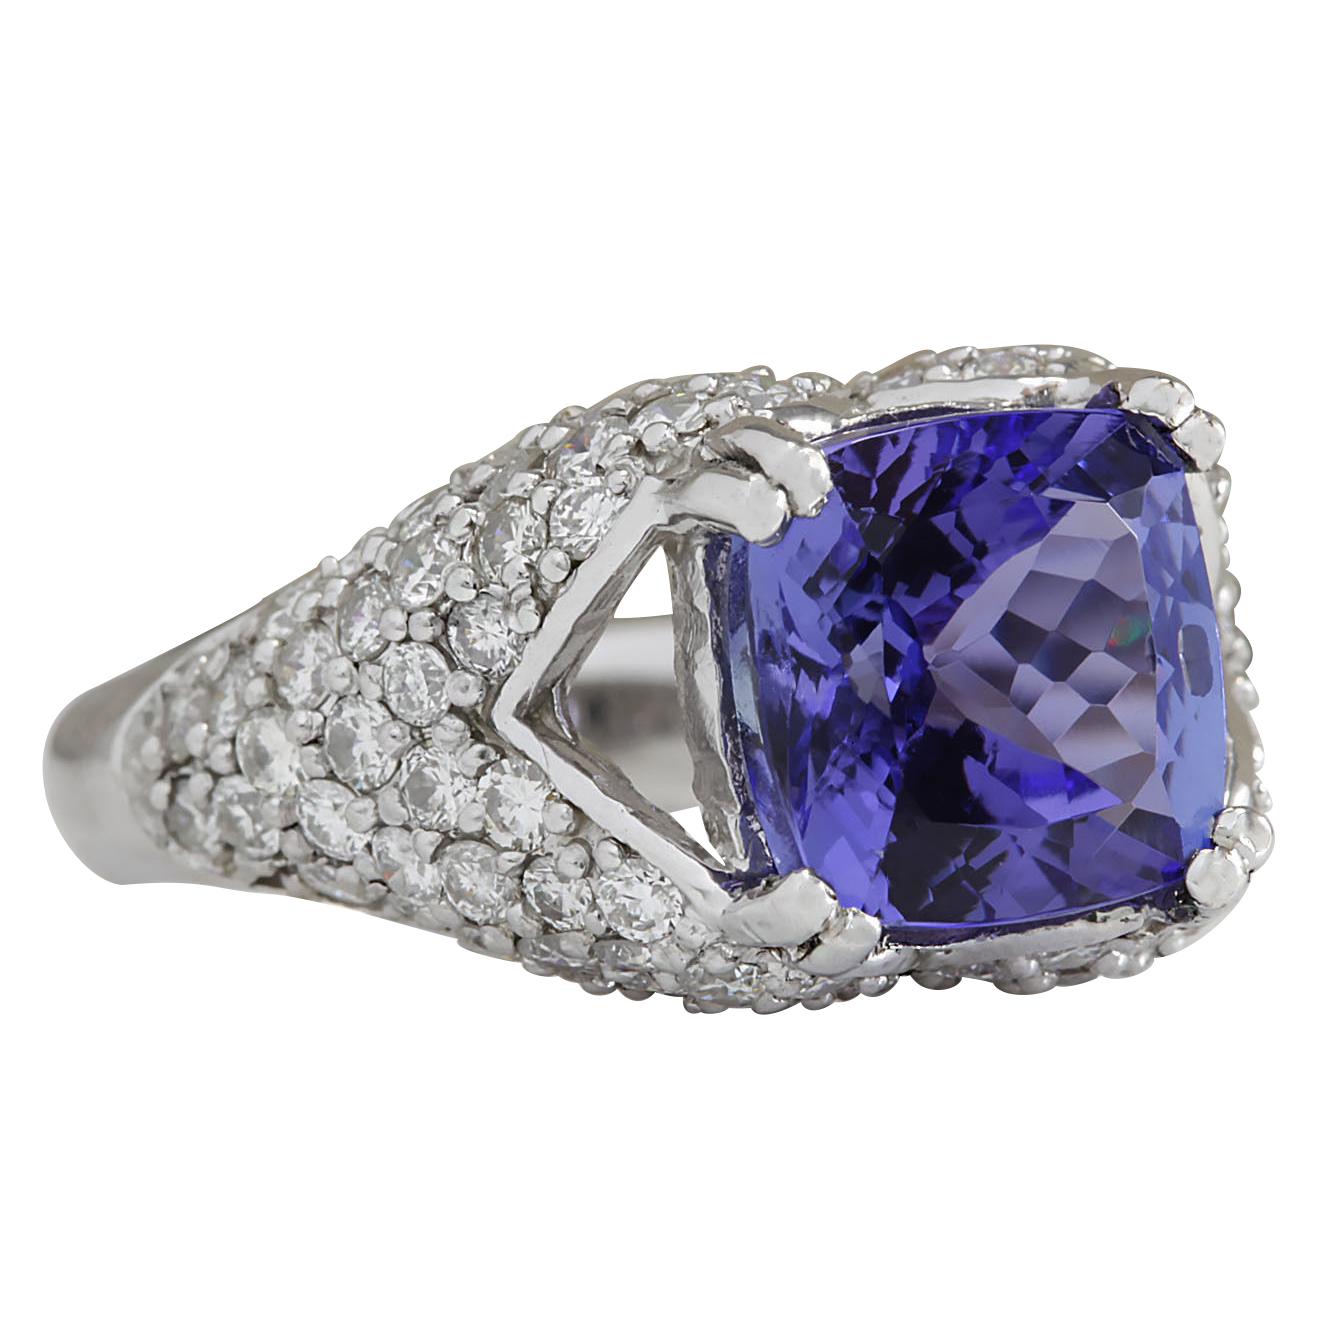 6.32 Carat Tanzanite 14 Karat White Gold Diamond Ring
Stamped: 14K White Gold
Total Ring Weight: 7.0 Grams
Total  Tanzanite Weight is 4.72 Carat (Measures: 9.50x9.50 mm)
Color: Blue
Total  Diamond Weight is 1.60 Carat
Color: F-G, Clarity: